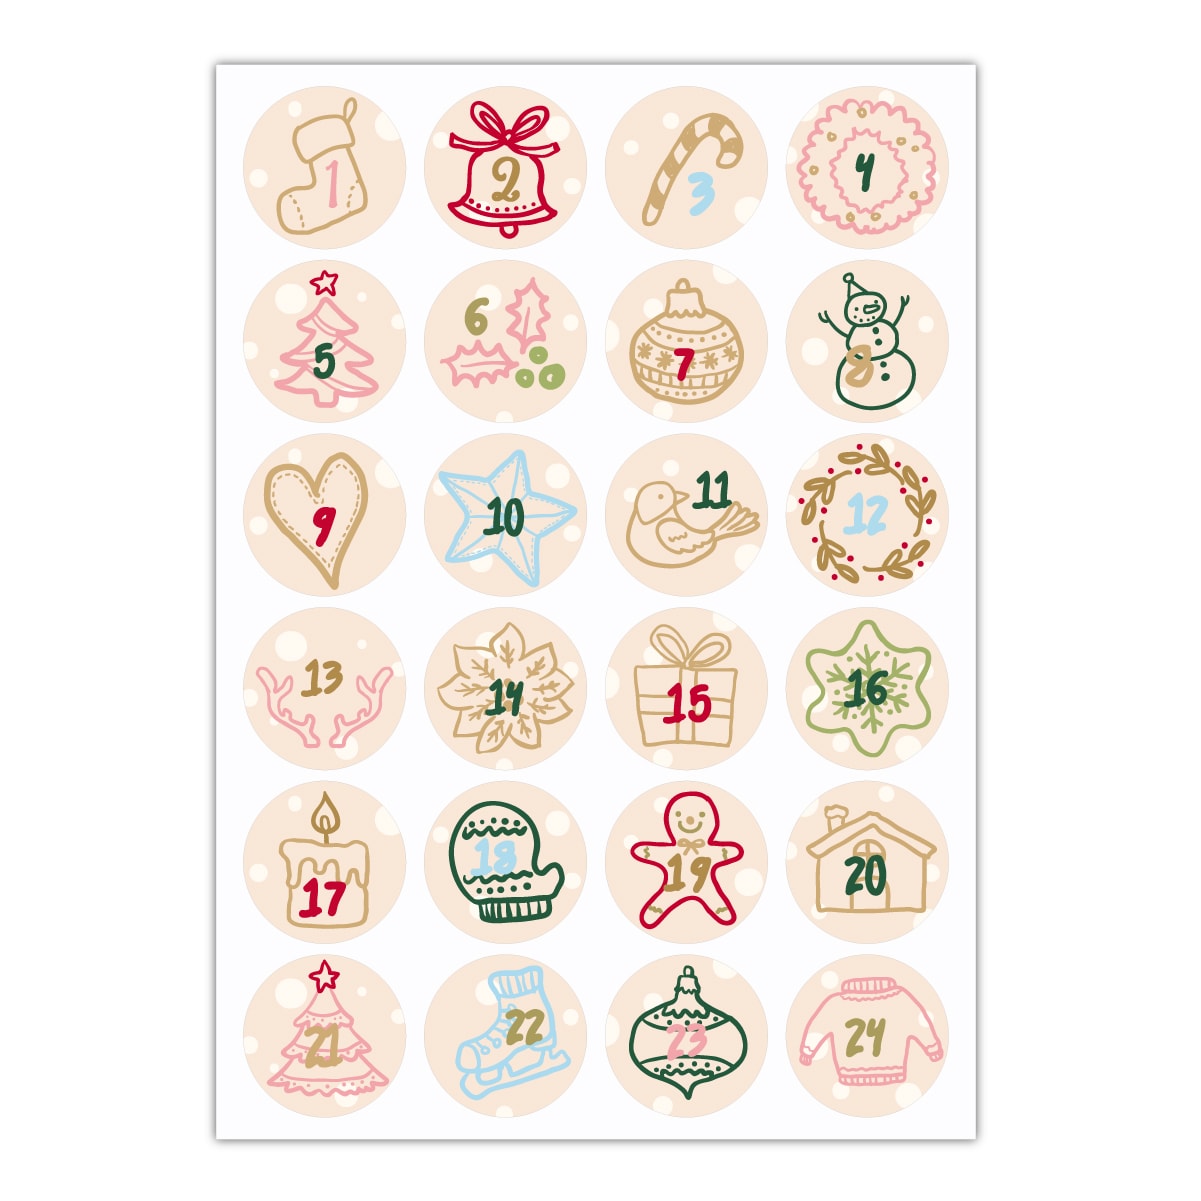 Kartenkaufrausch Sticker in beige: 24 gezeichnete Advents Aufkleber